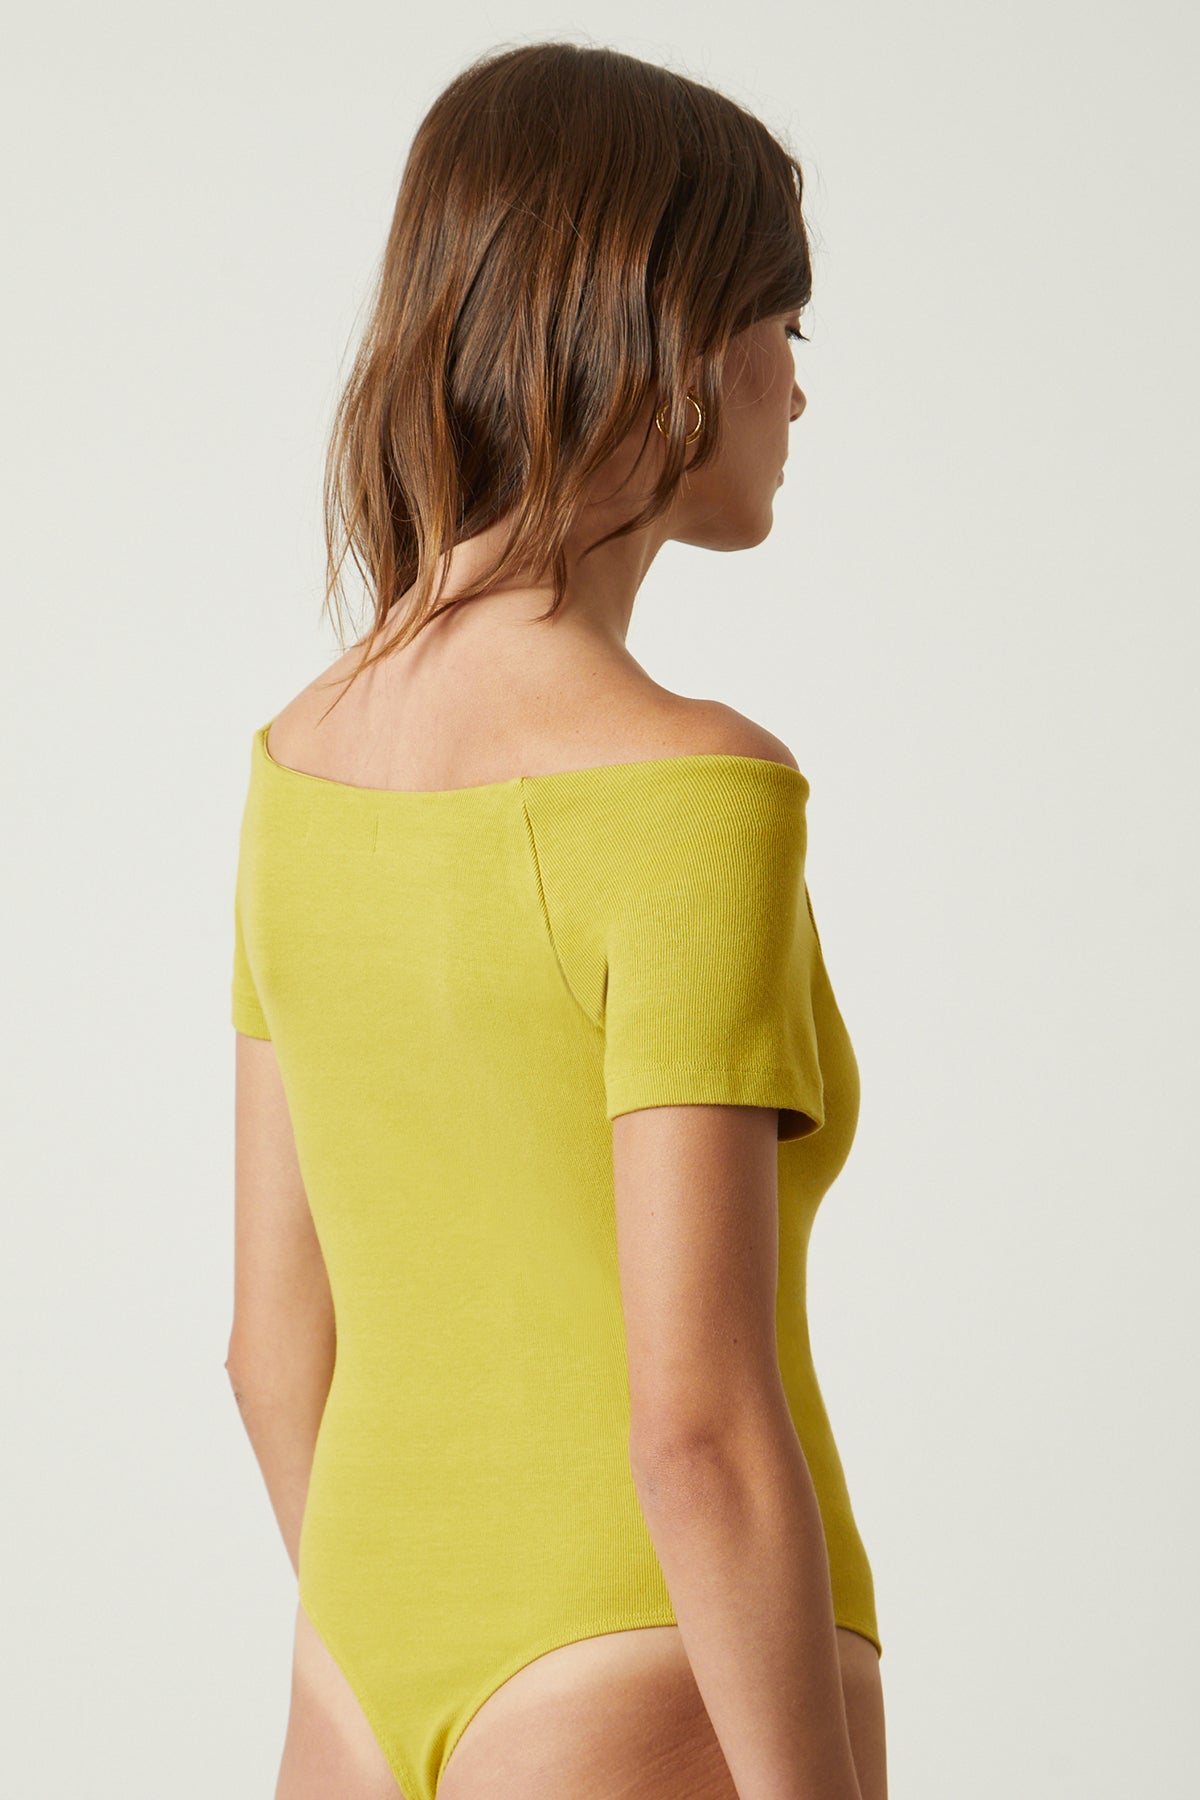   Eloise bodysuit in sundance yellow back & side 